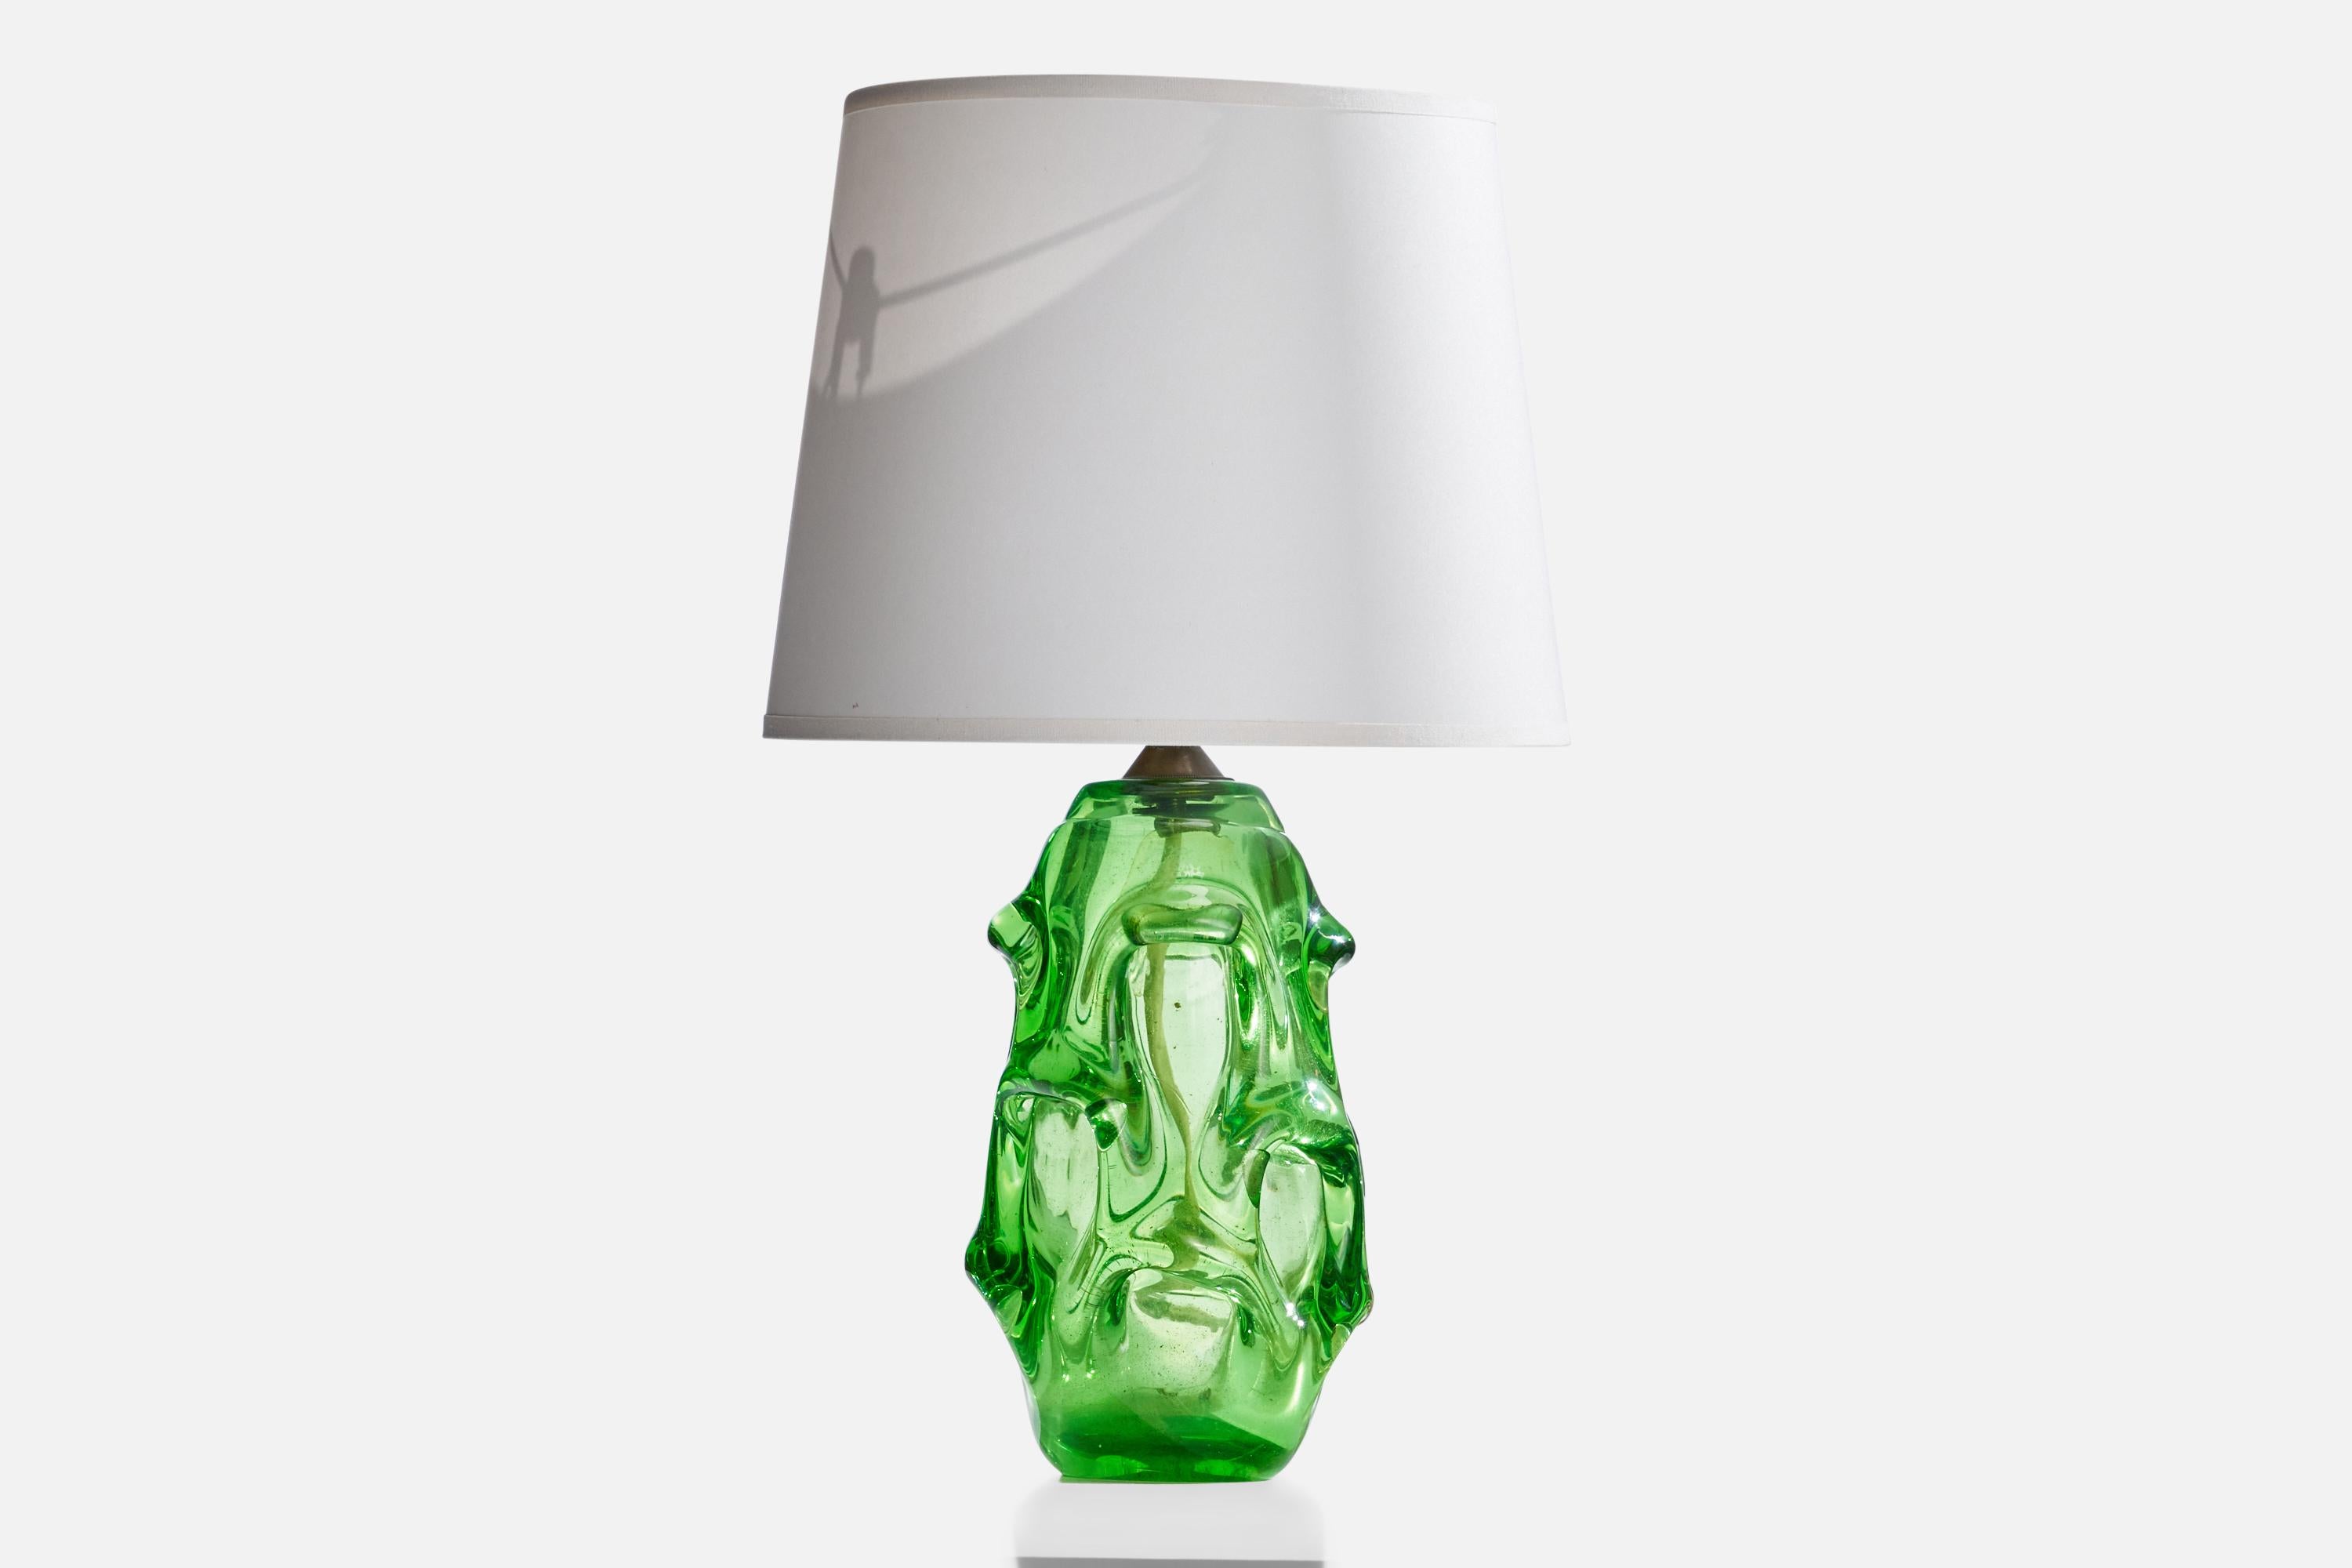 Tischlampe aus grünem mundgeblasenem Glas und Messing, entworfen von Börne Augustsson und hergestellt von Åseda Glasbruk, Schweden, 1940er Jahre.

Abmessungen der Lampe (Zoll): 13